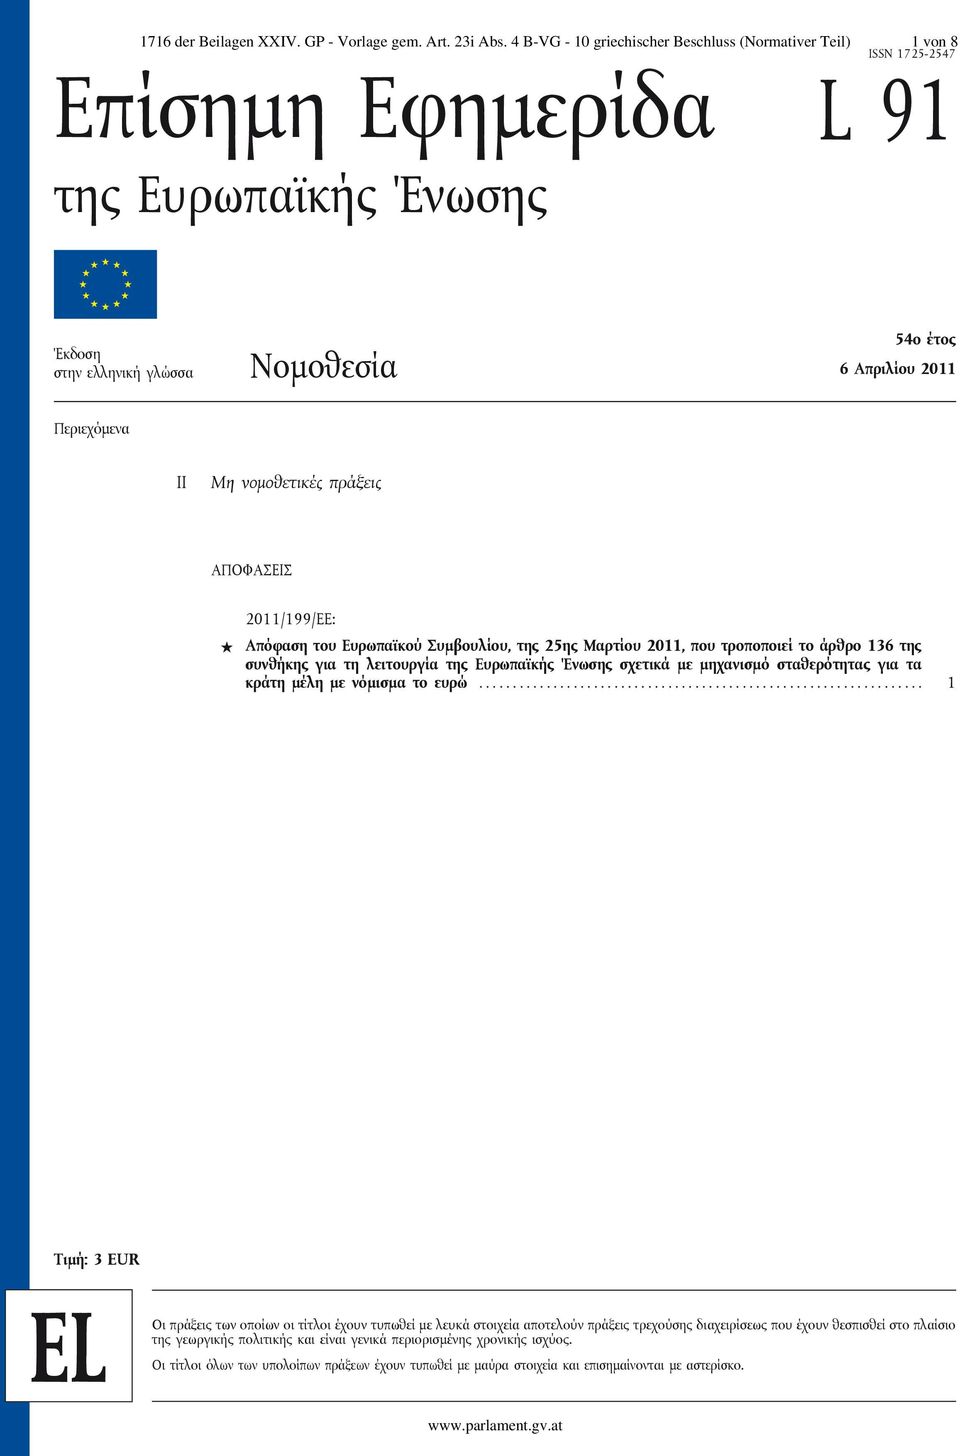 Μη νομοθετικές πράξεις ΑΠΟΦΑΣΕΙΣ 2011/199/EE: Απόφαση του Ευρωπαϊκού Συμβουλίου, της 25ης Μαρτίου 2011, που τροποποιεί το άρθρο 136 της συνθήκης για τη λειτουργία της Ευρωπαϊκής Ένωσης σχετικά με